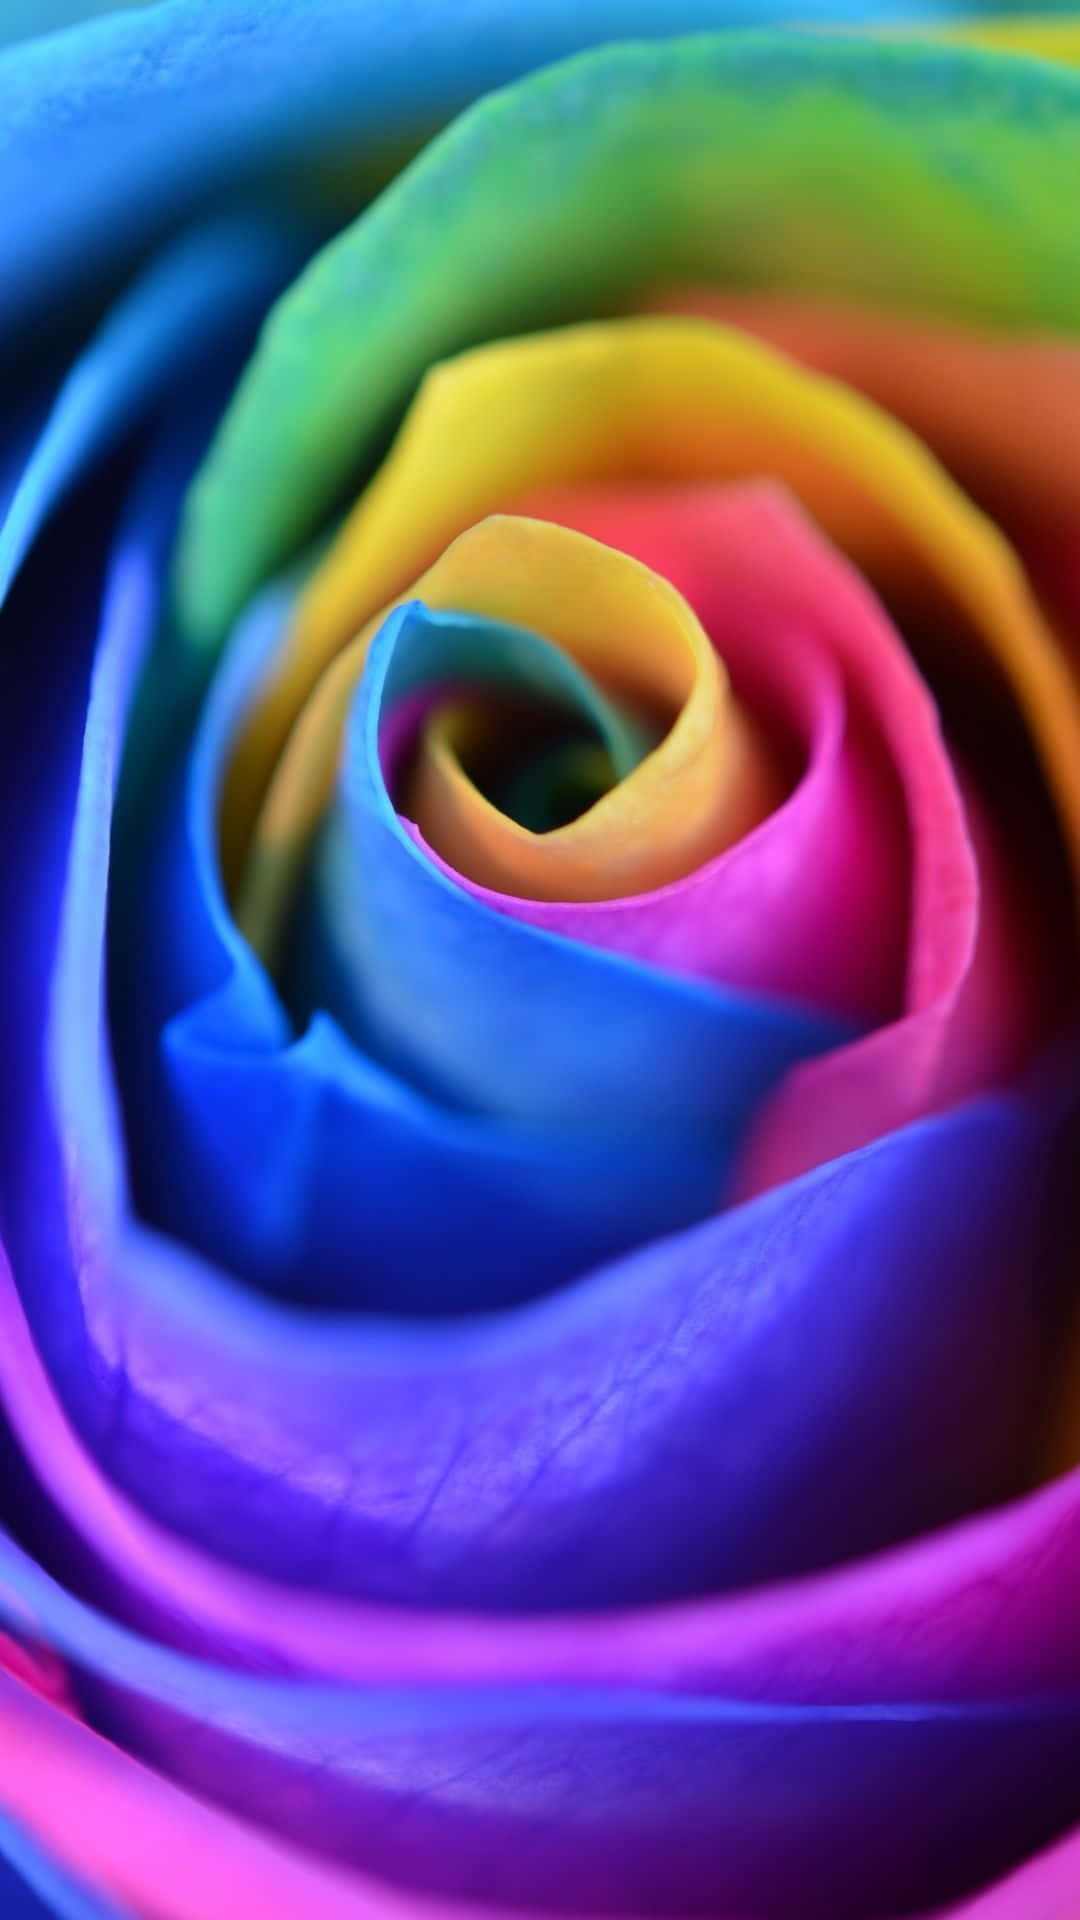 Verleihensie Ihrem Smartphone Mit Diesem Rainbow Flower Iphone-hintergrundbild Einen Farbtupfer! Wallpaper